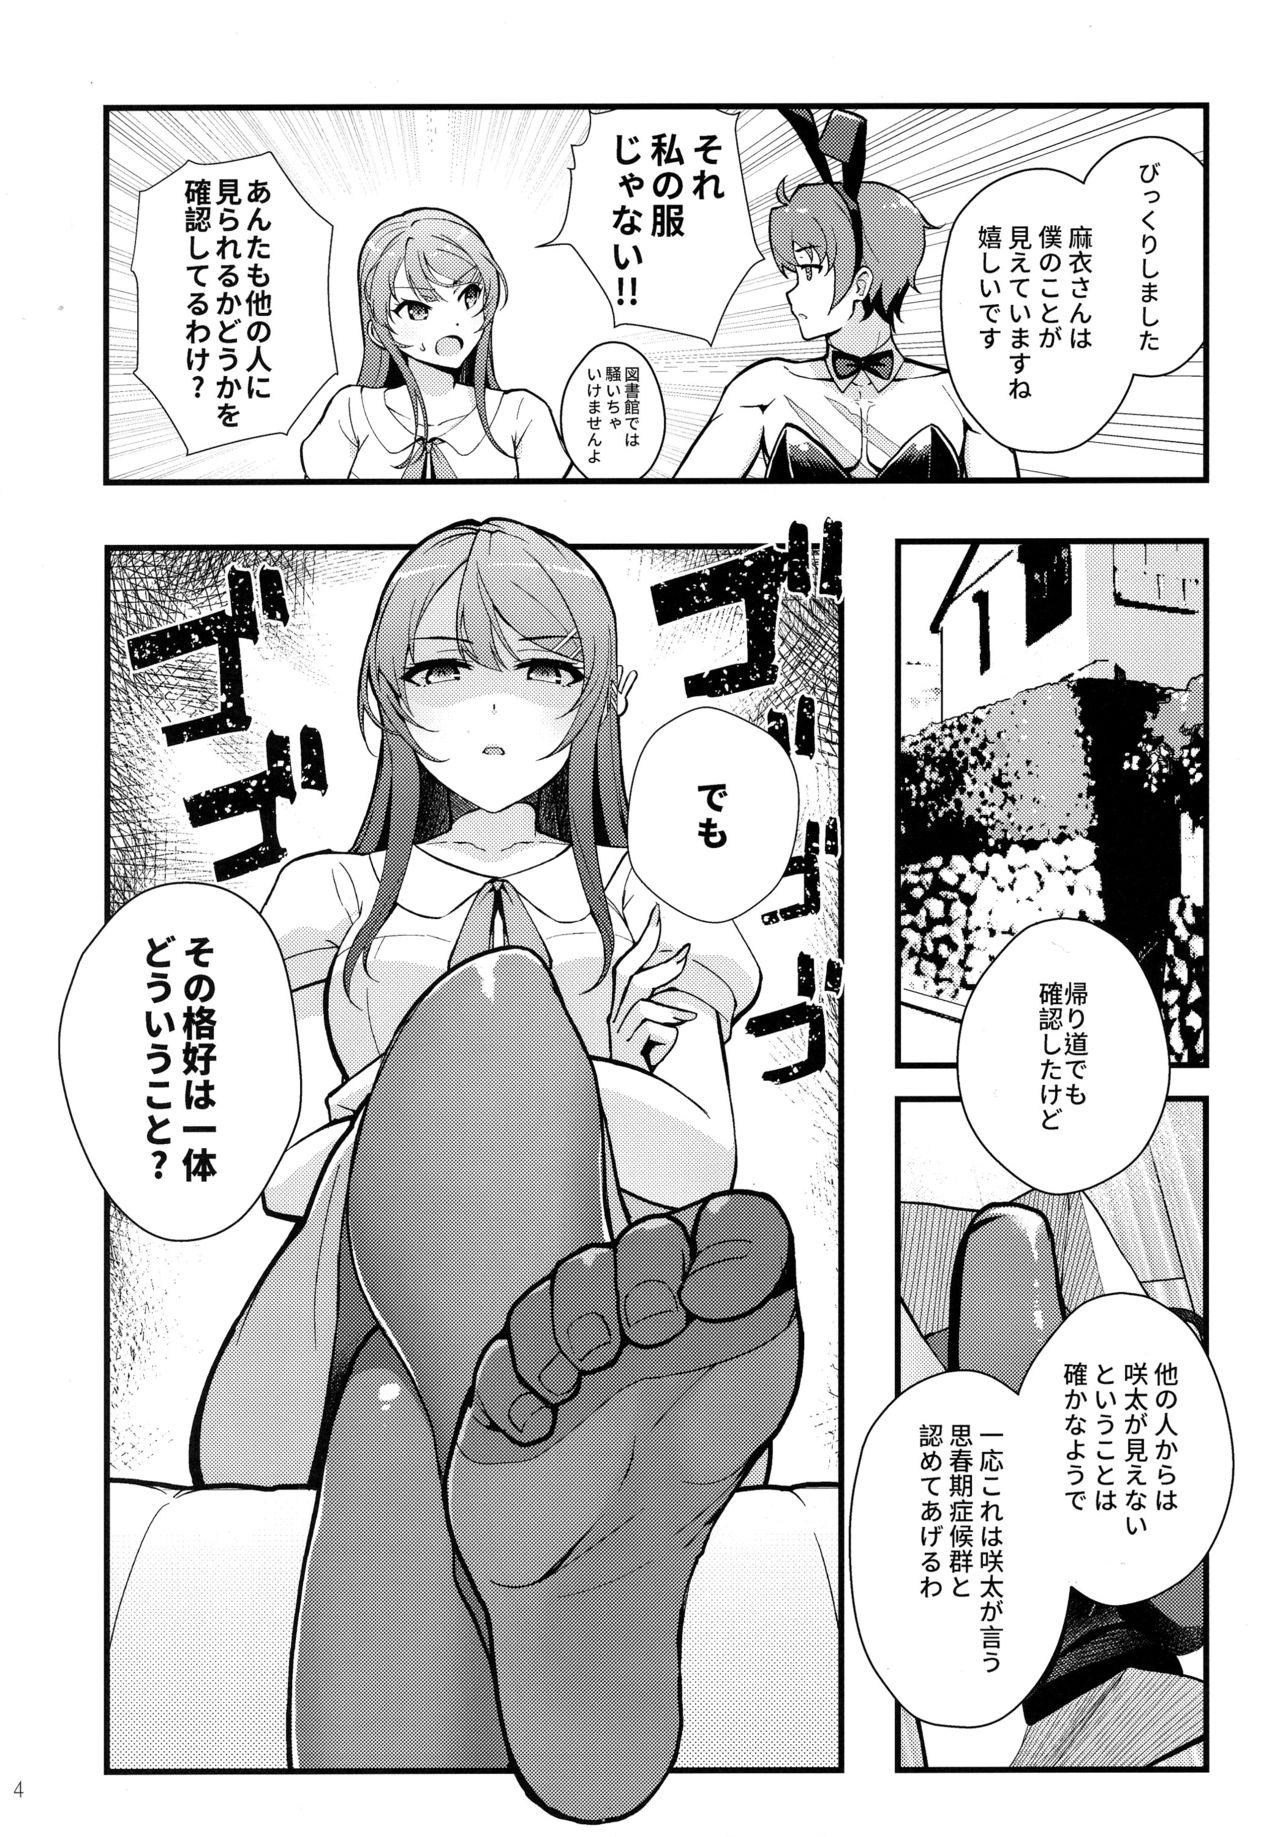 Leche Bunny Lovers - Seishun buta yarou wa bunny girl senpai no yume o minai Large - Page 5